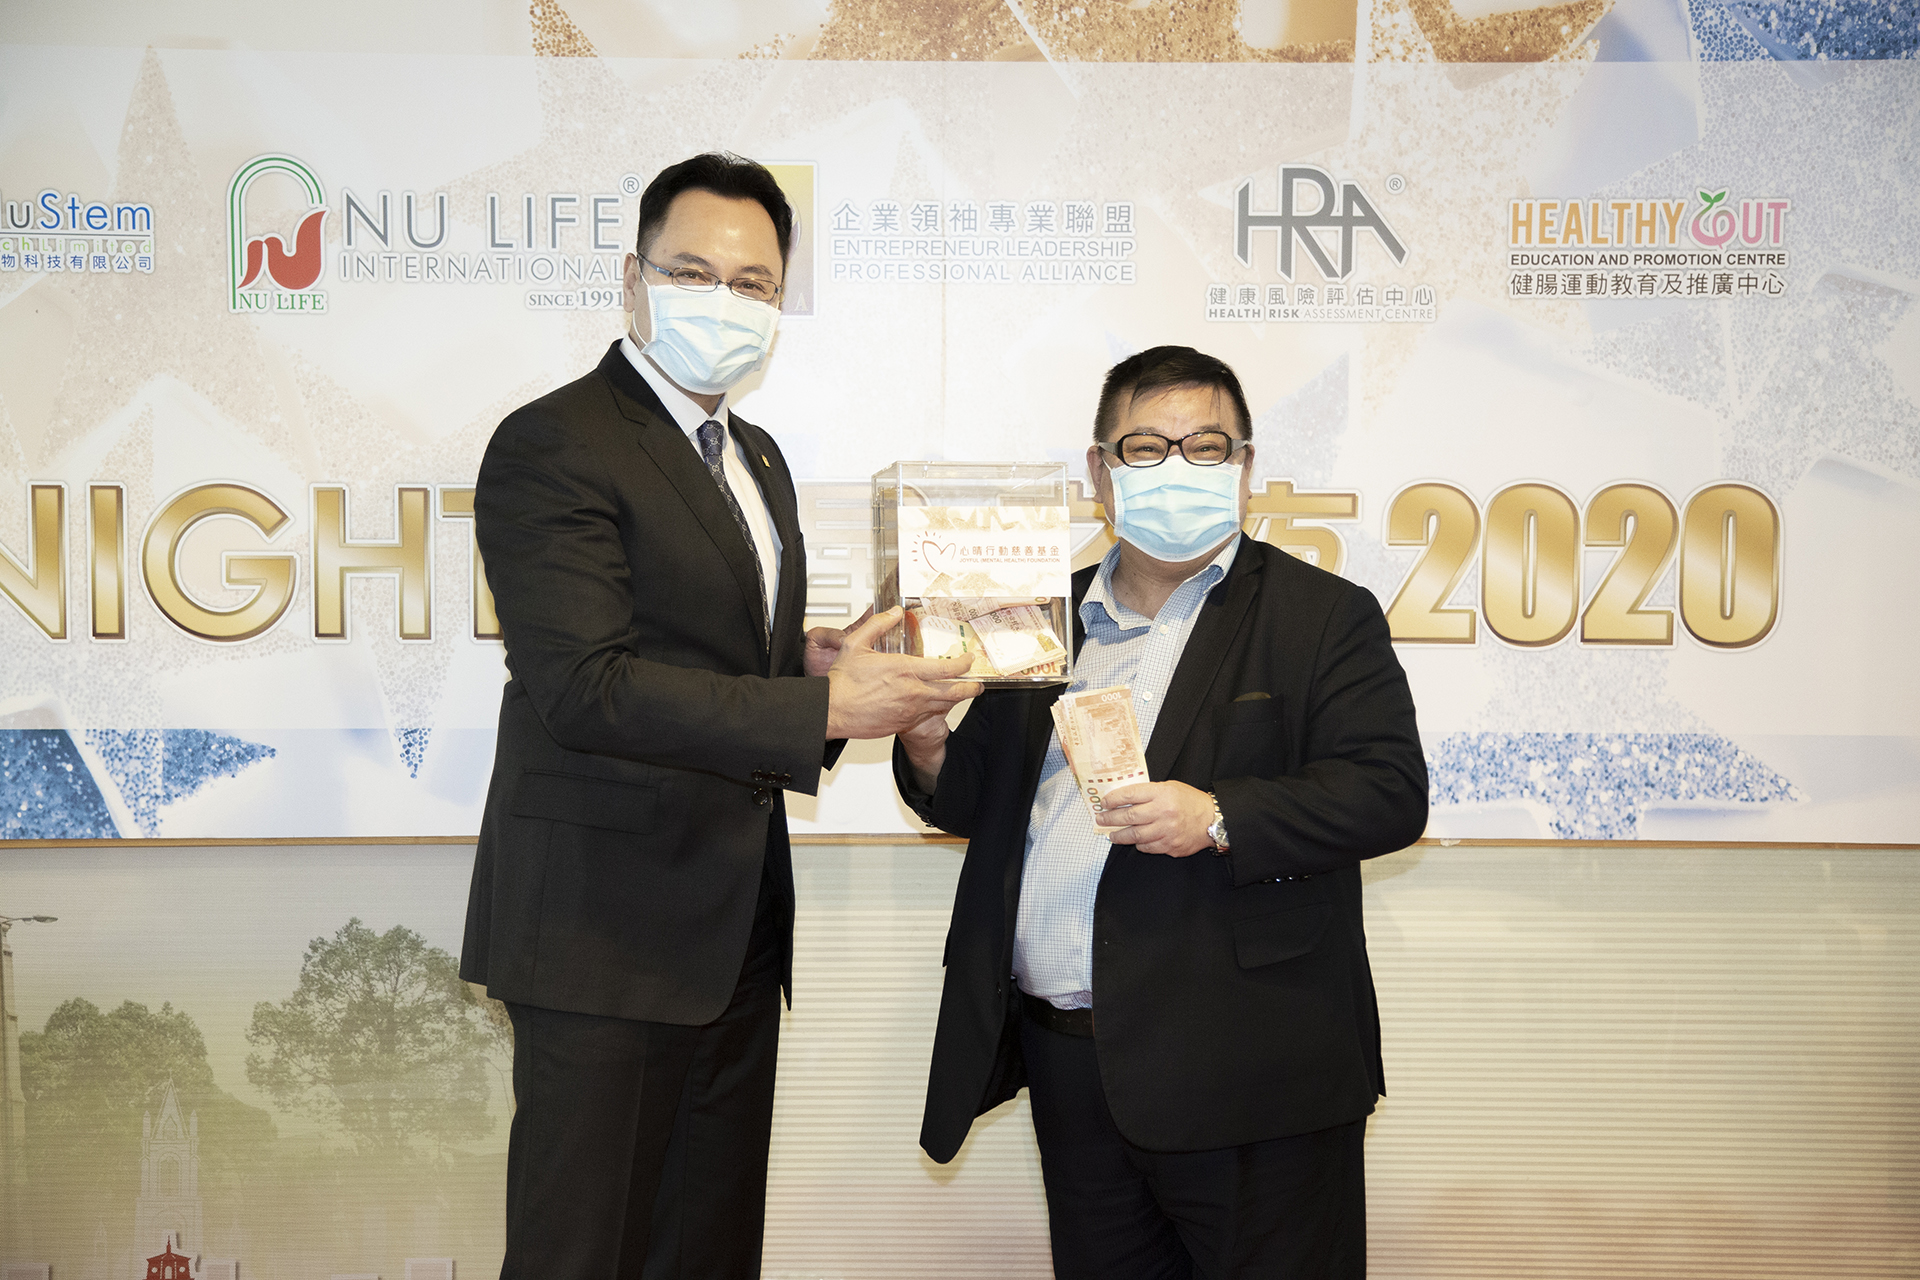 恭賀杜禮橋先生從星級百萬富翁遊戲贏取HK$10,000獎金並與公司合共損助HK$8000予「心晴行動慈善基金」